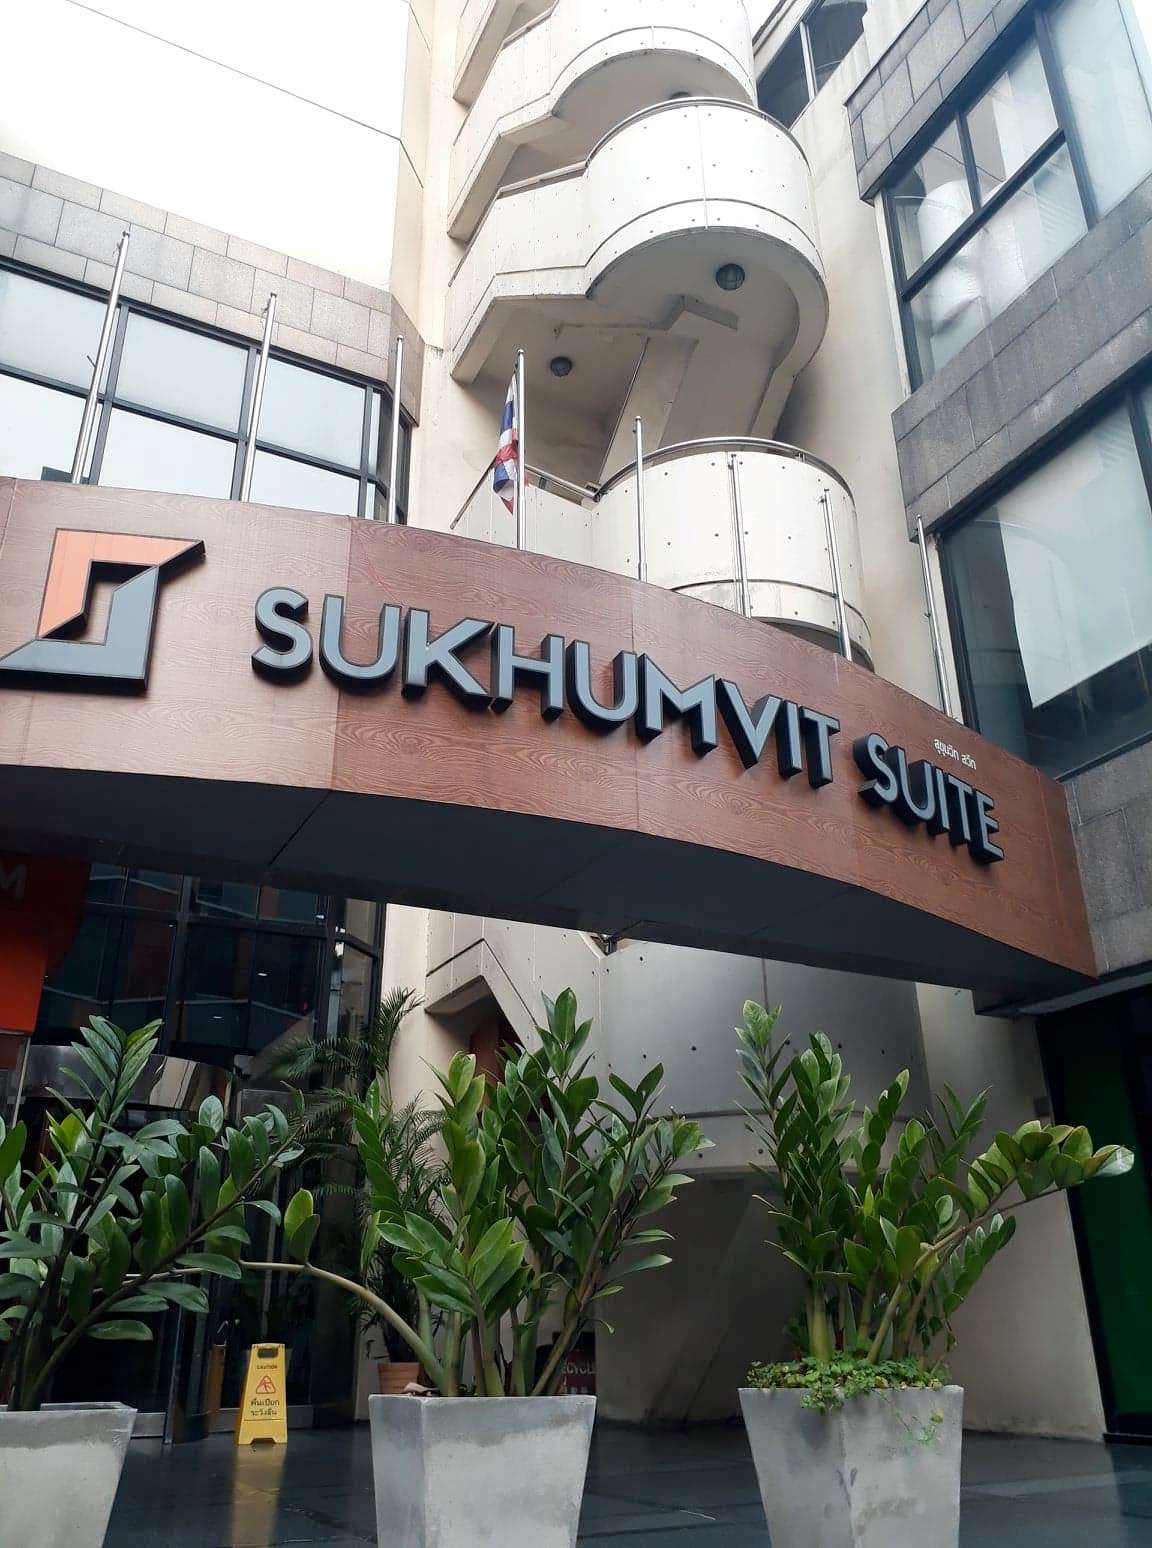 Office for rent Sukhumvit Suite Building : 77.75 Sqm. (OCCUPIED)